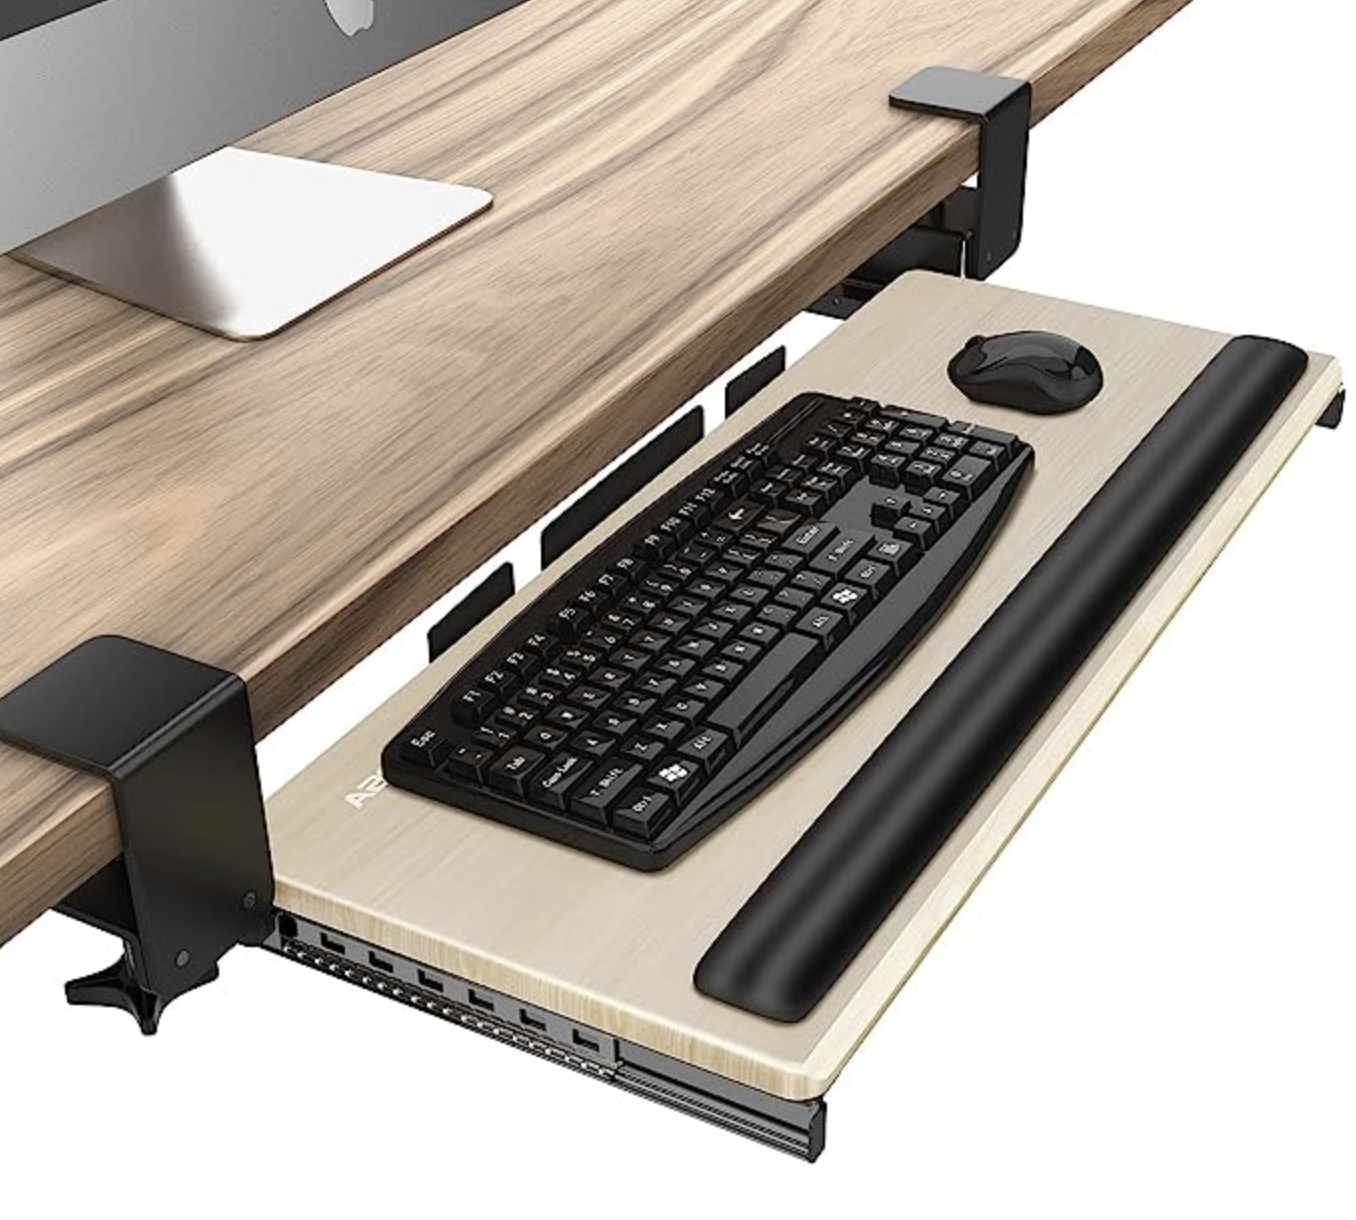 Pourquoi utiliser un support pour clavier coulissant sous son bureau ? -  Capitaine Télétravail